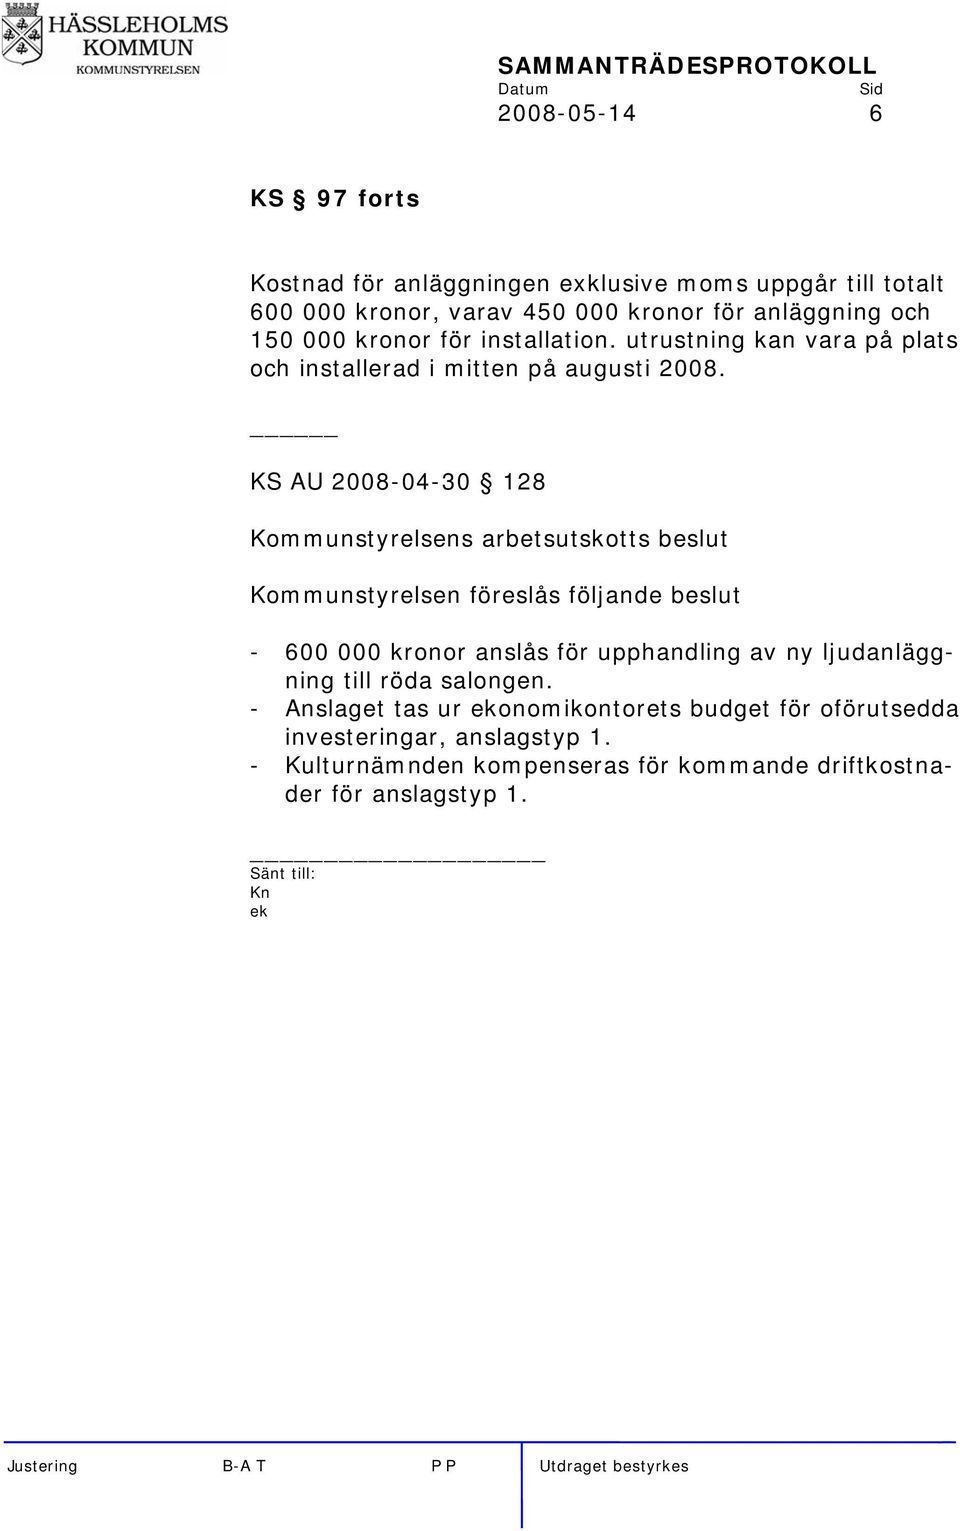 KS AU 2008-04-30 128 Kommunstyrelsens arbetsutskotts beslut Kommunstyrelsen föreslås följande beslut - 600 000 kronor anslås för upphandling av ny